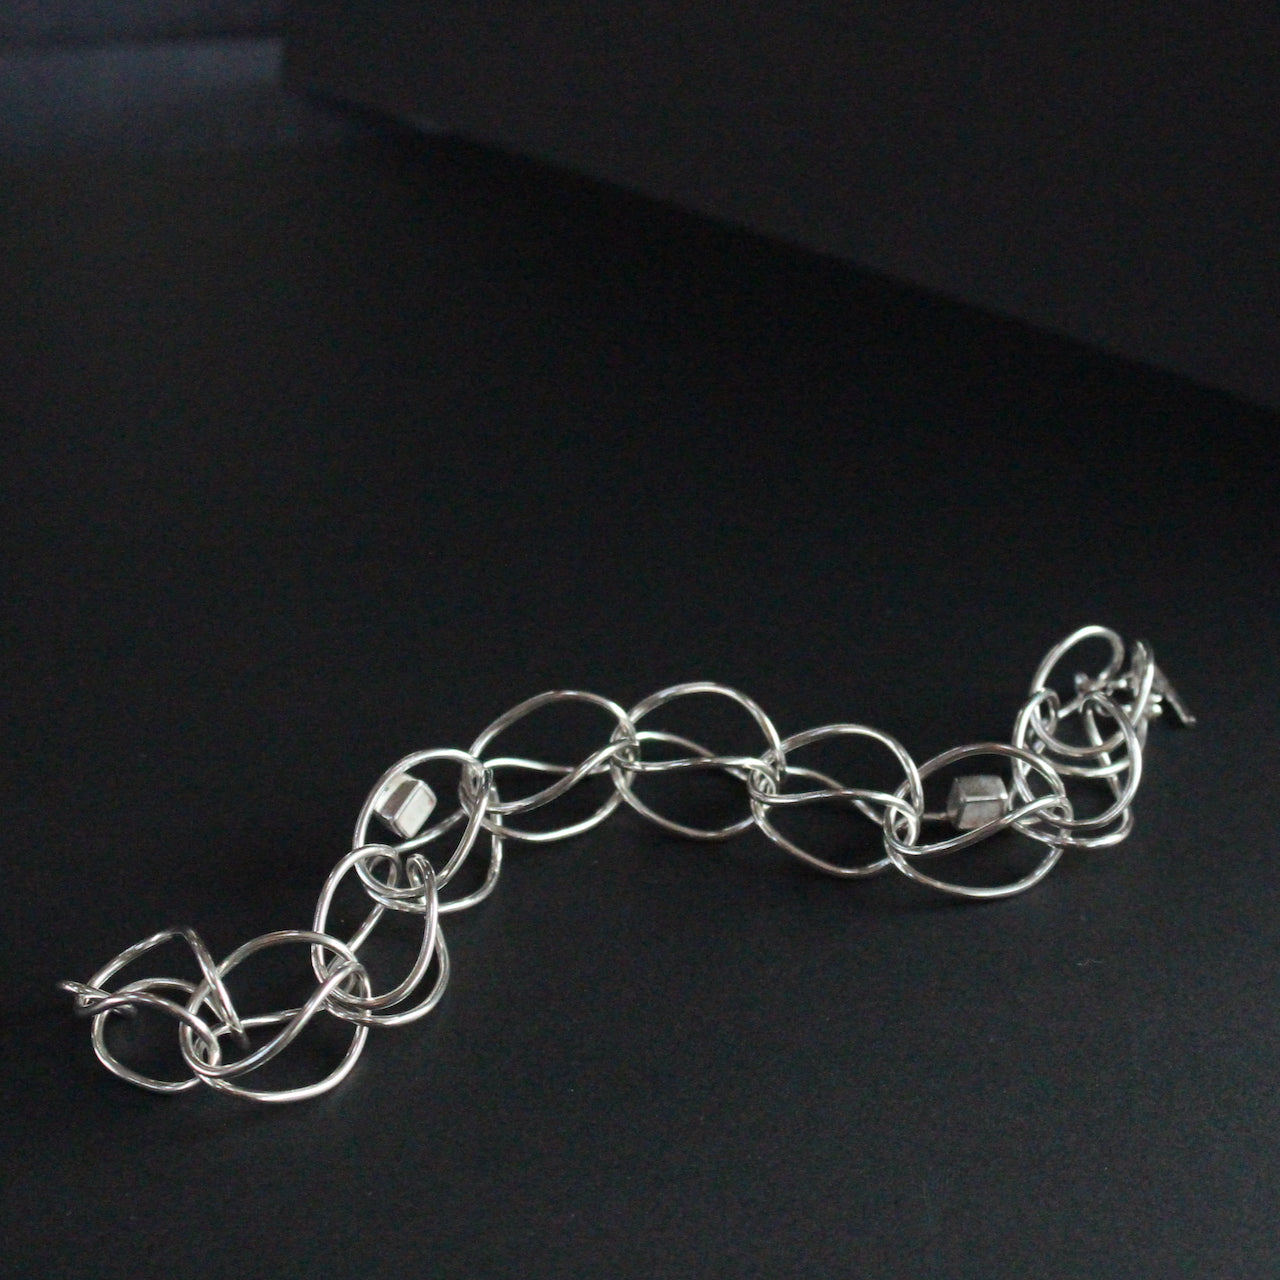 Sterling silver loop in loop chain bracelet by UK artist Amy Stringer.